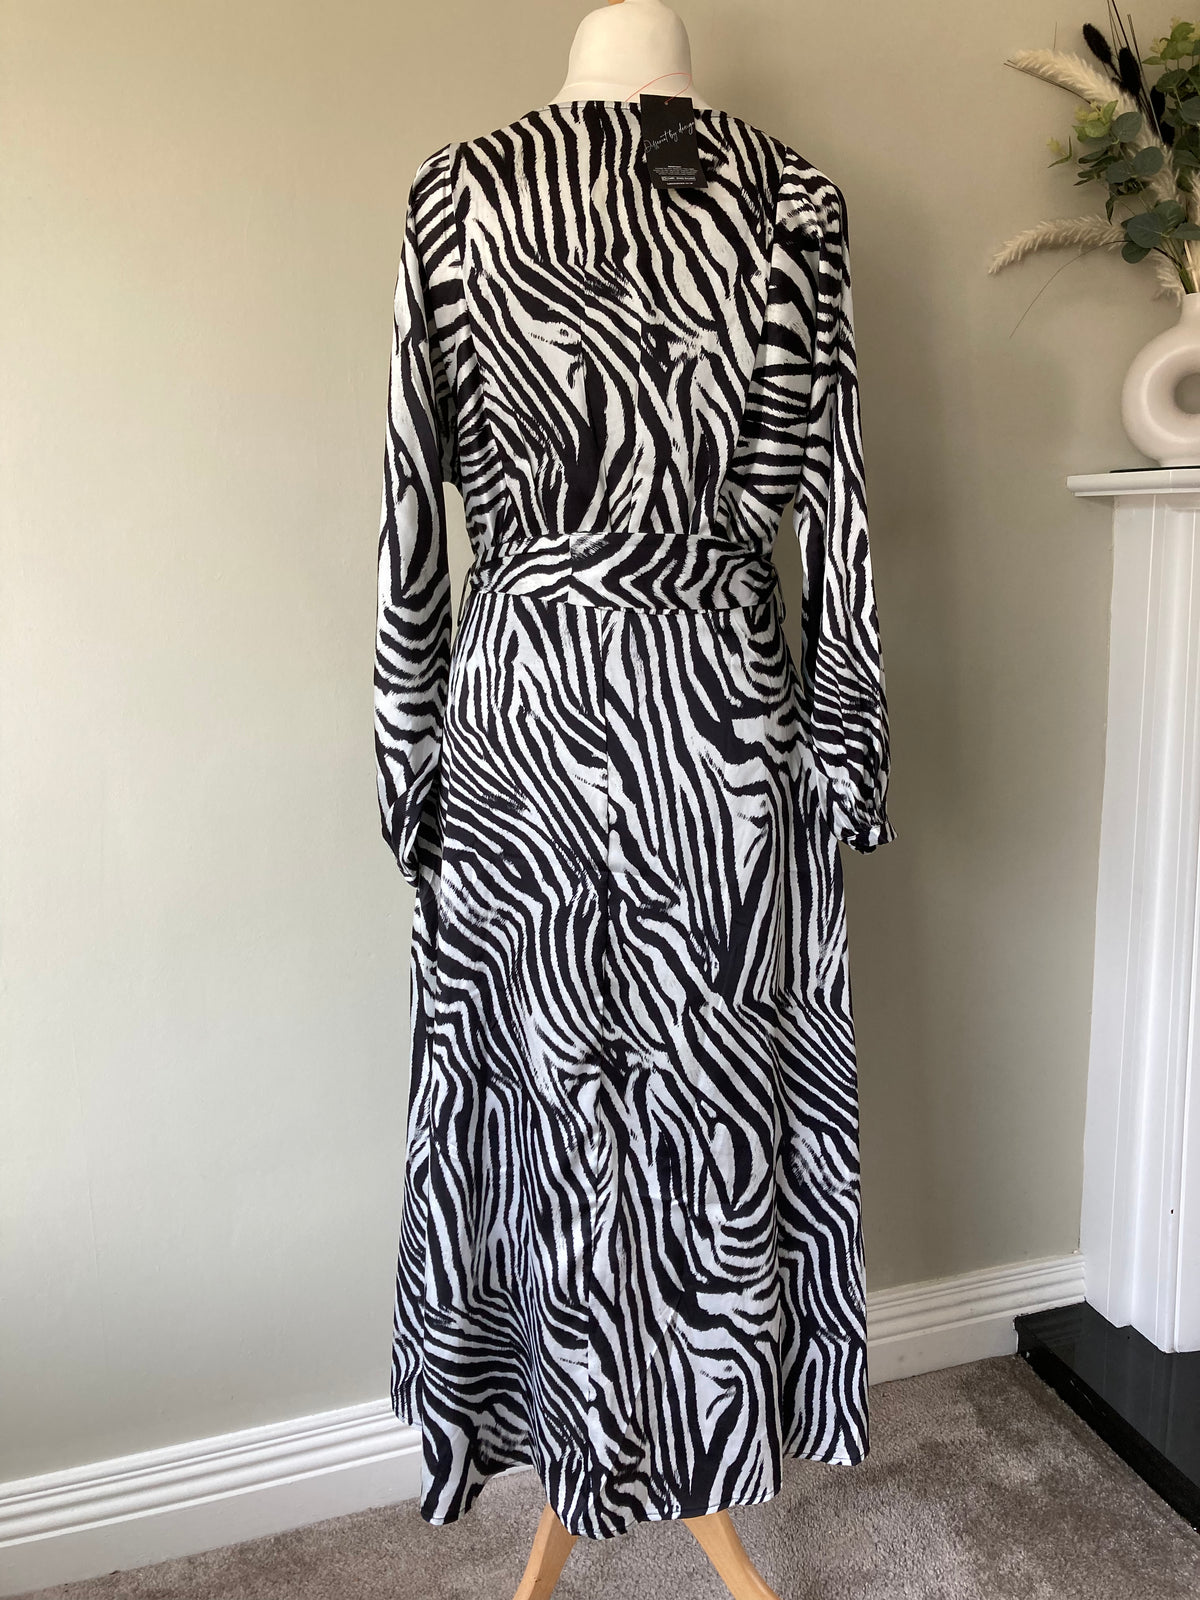 Zebra Print Silk-feel Tie Dress size 12